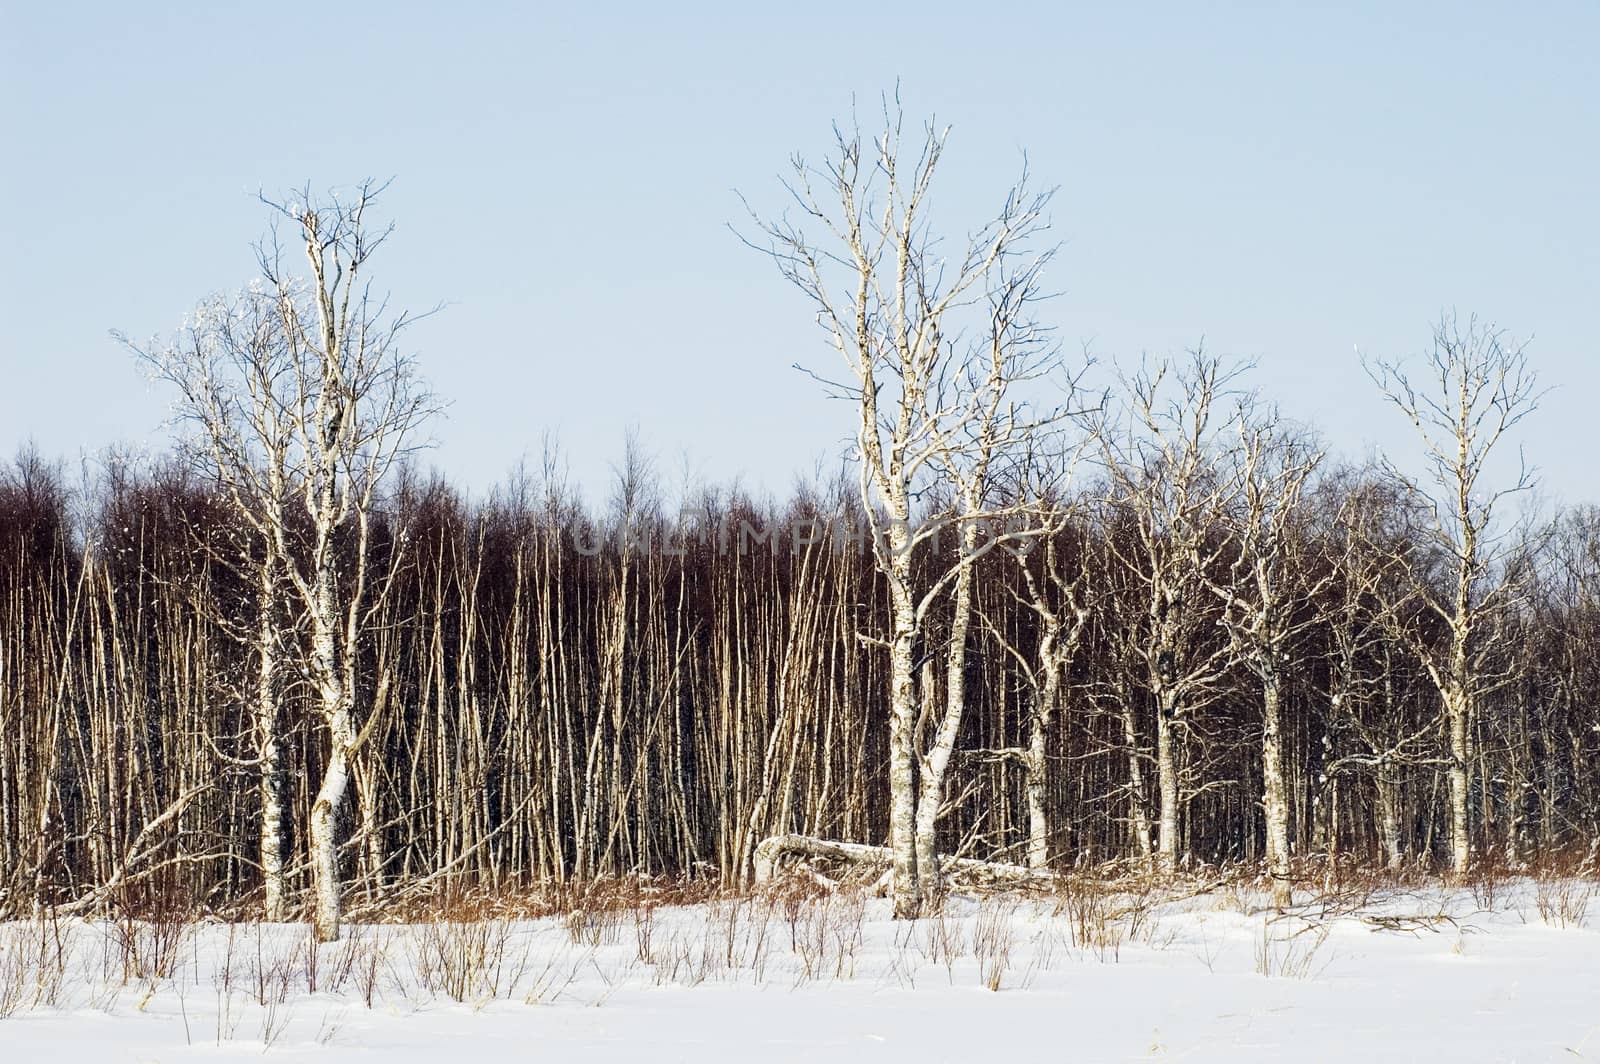 Birchwood in the winter. Russia.Islands in Ladoga Lake.